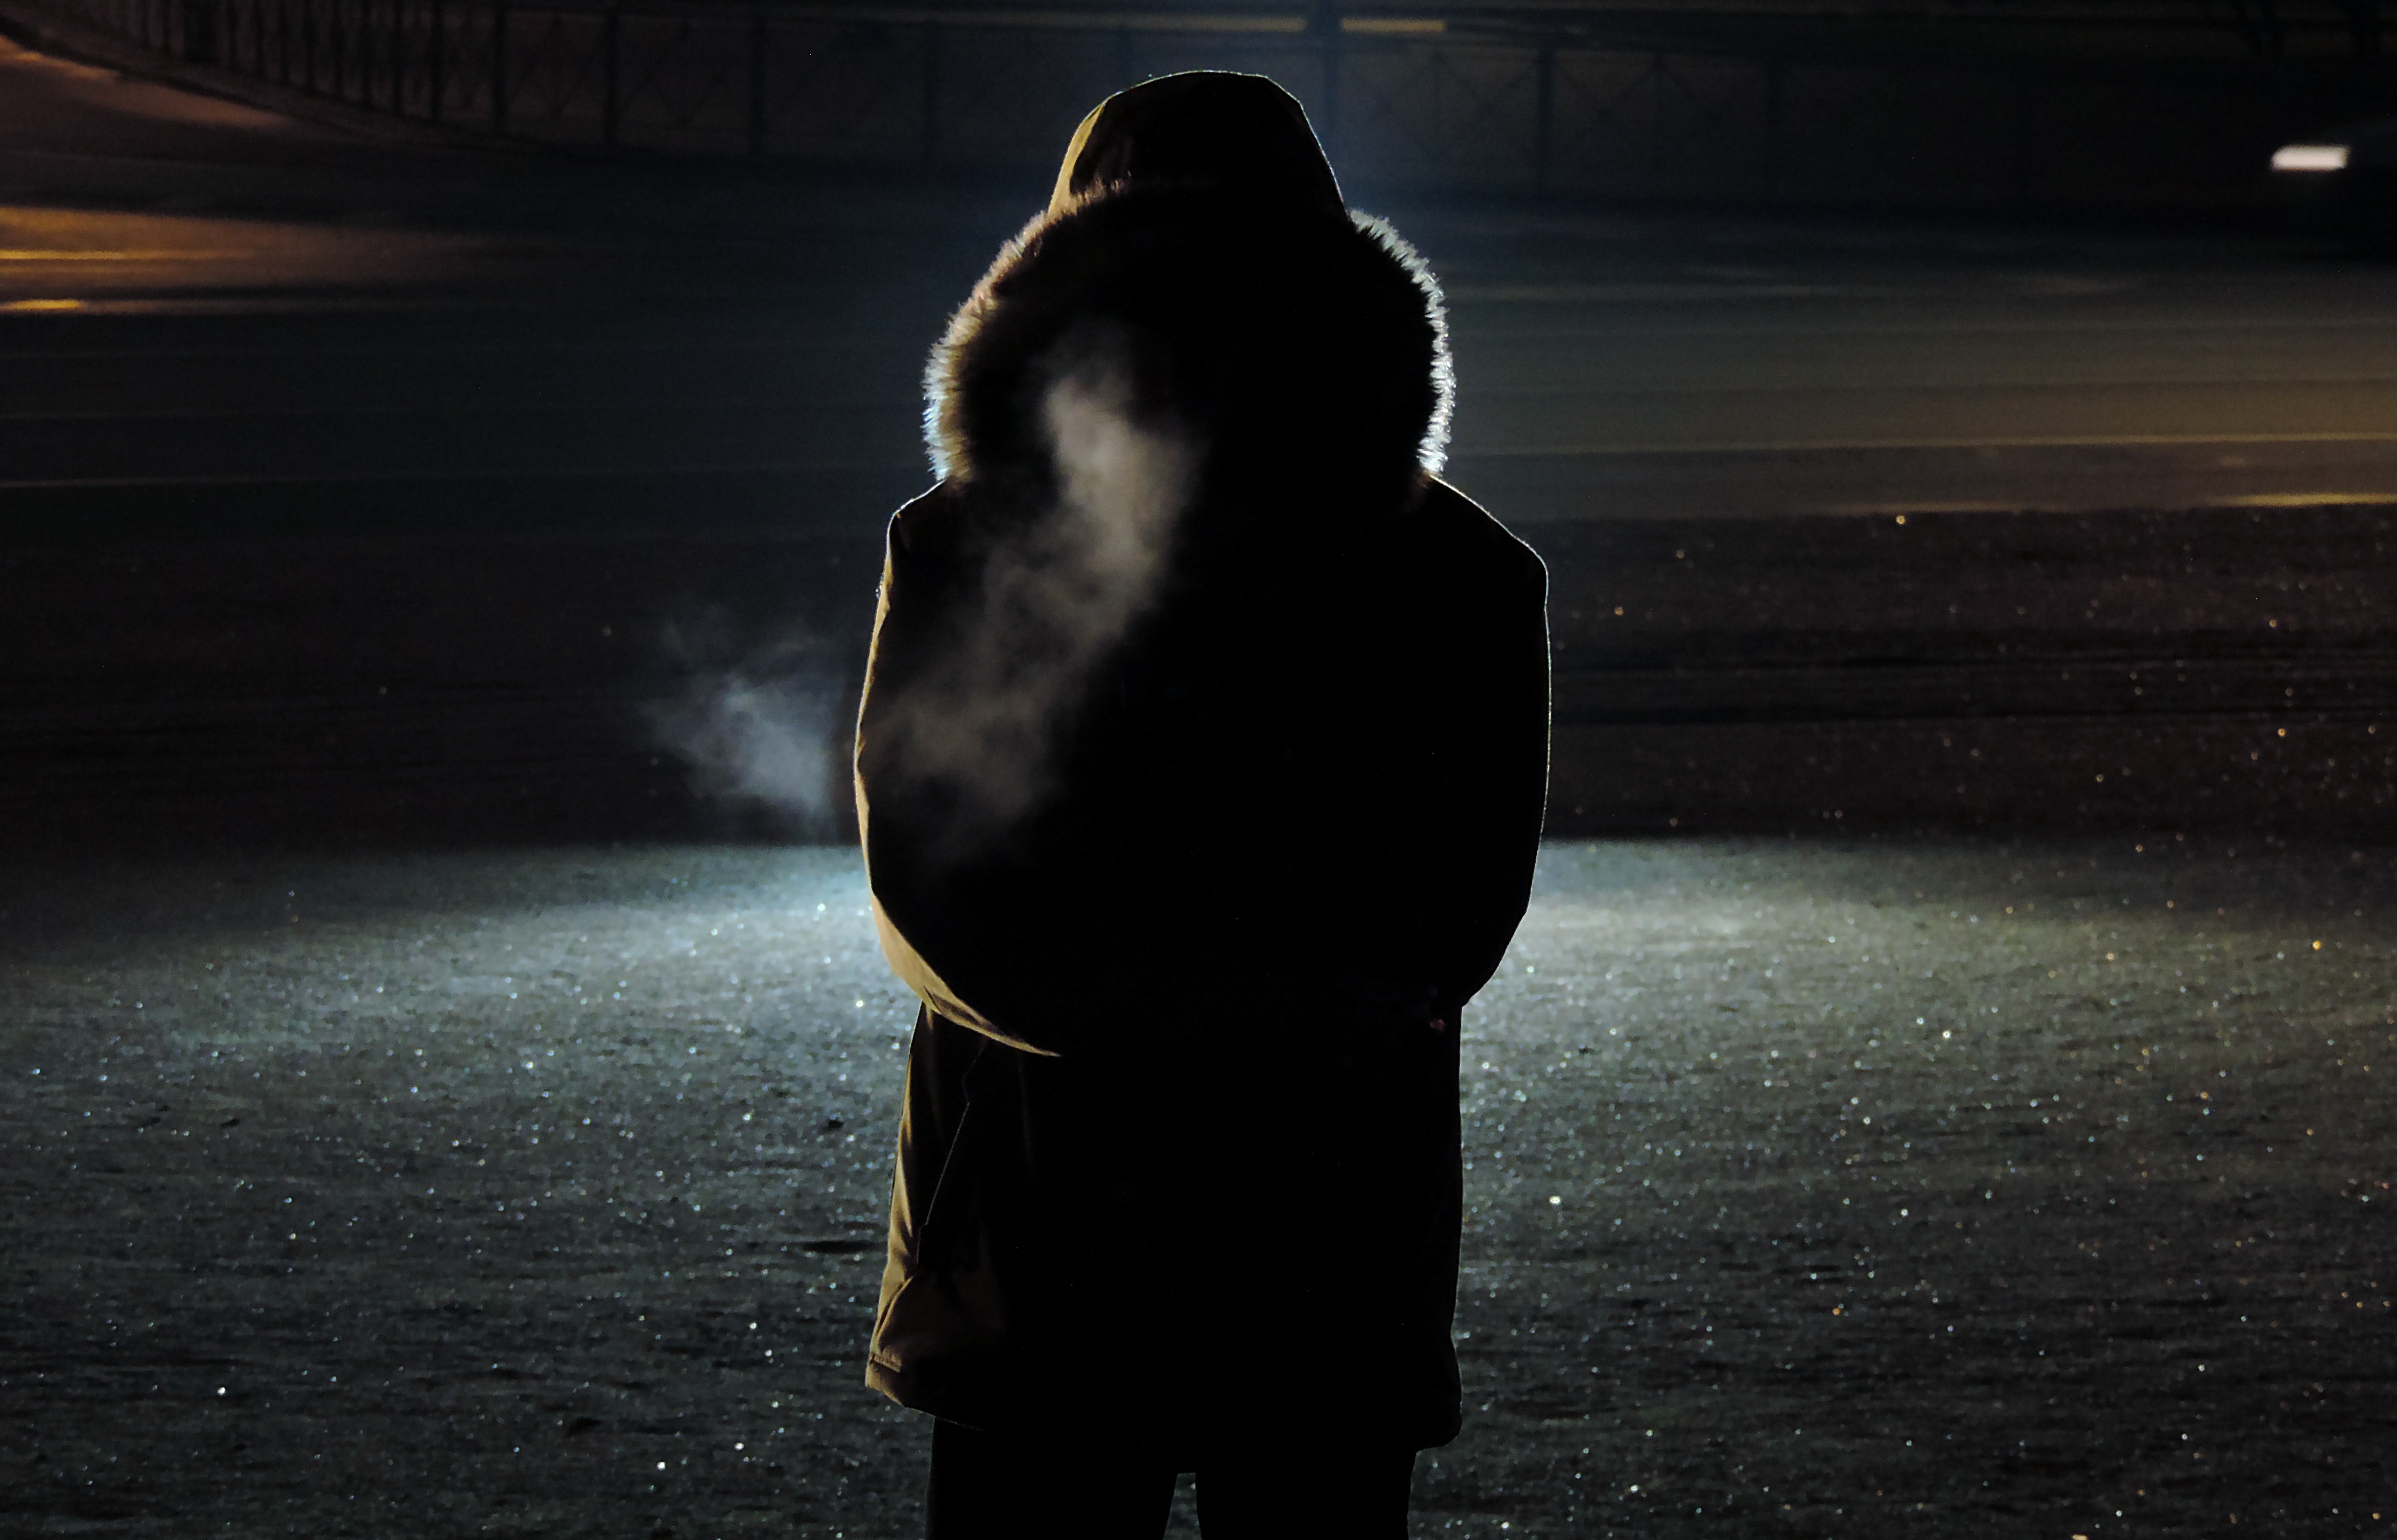 Фото на аву для девушек без лица со спины в темноте зимой